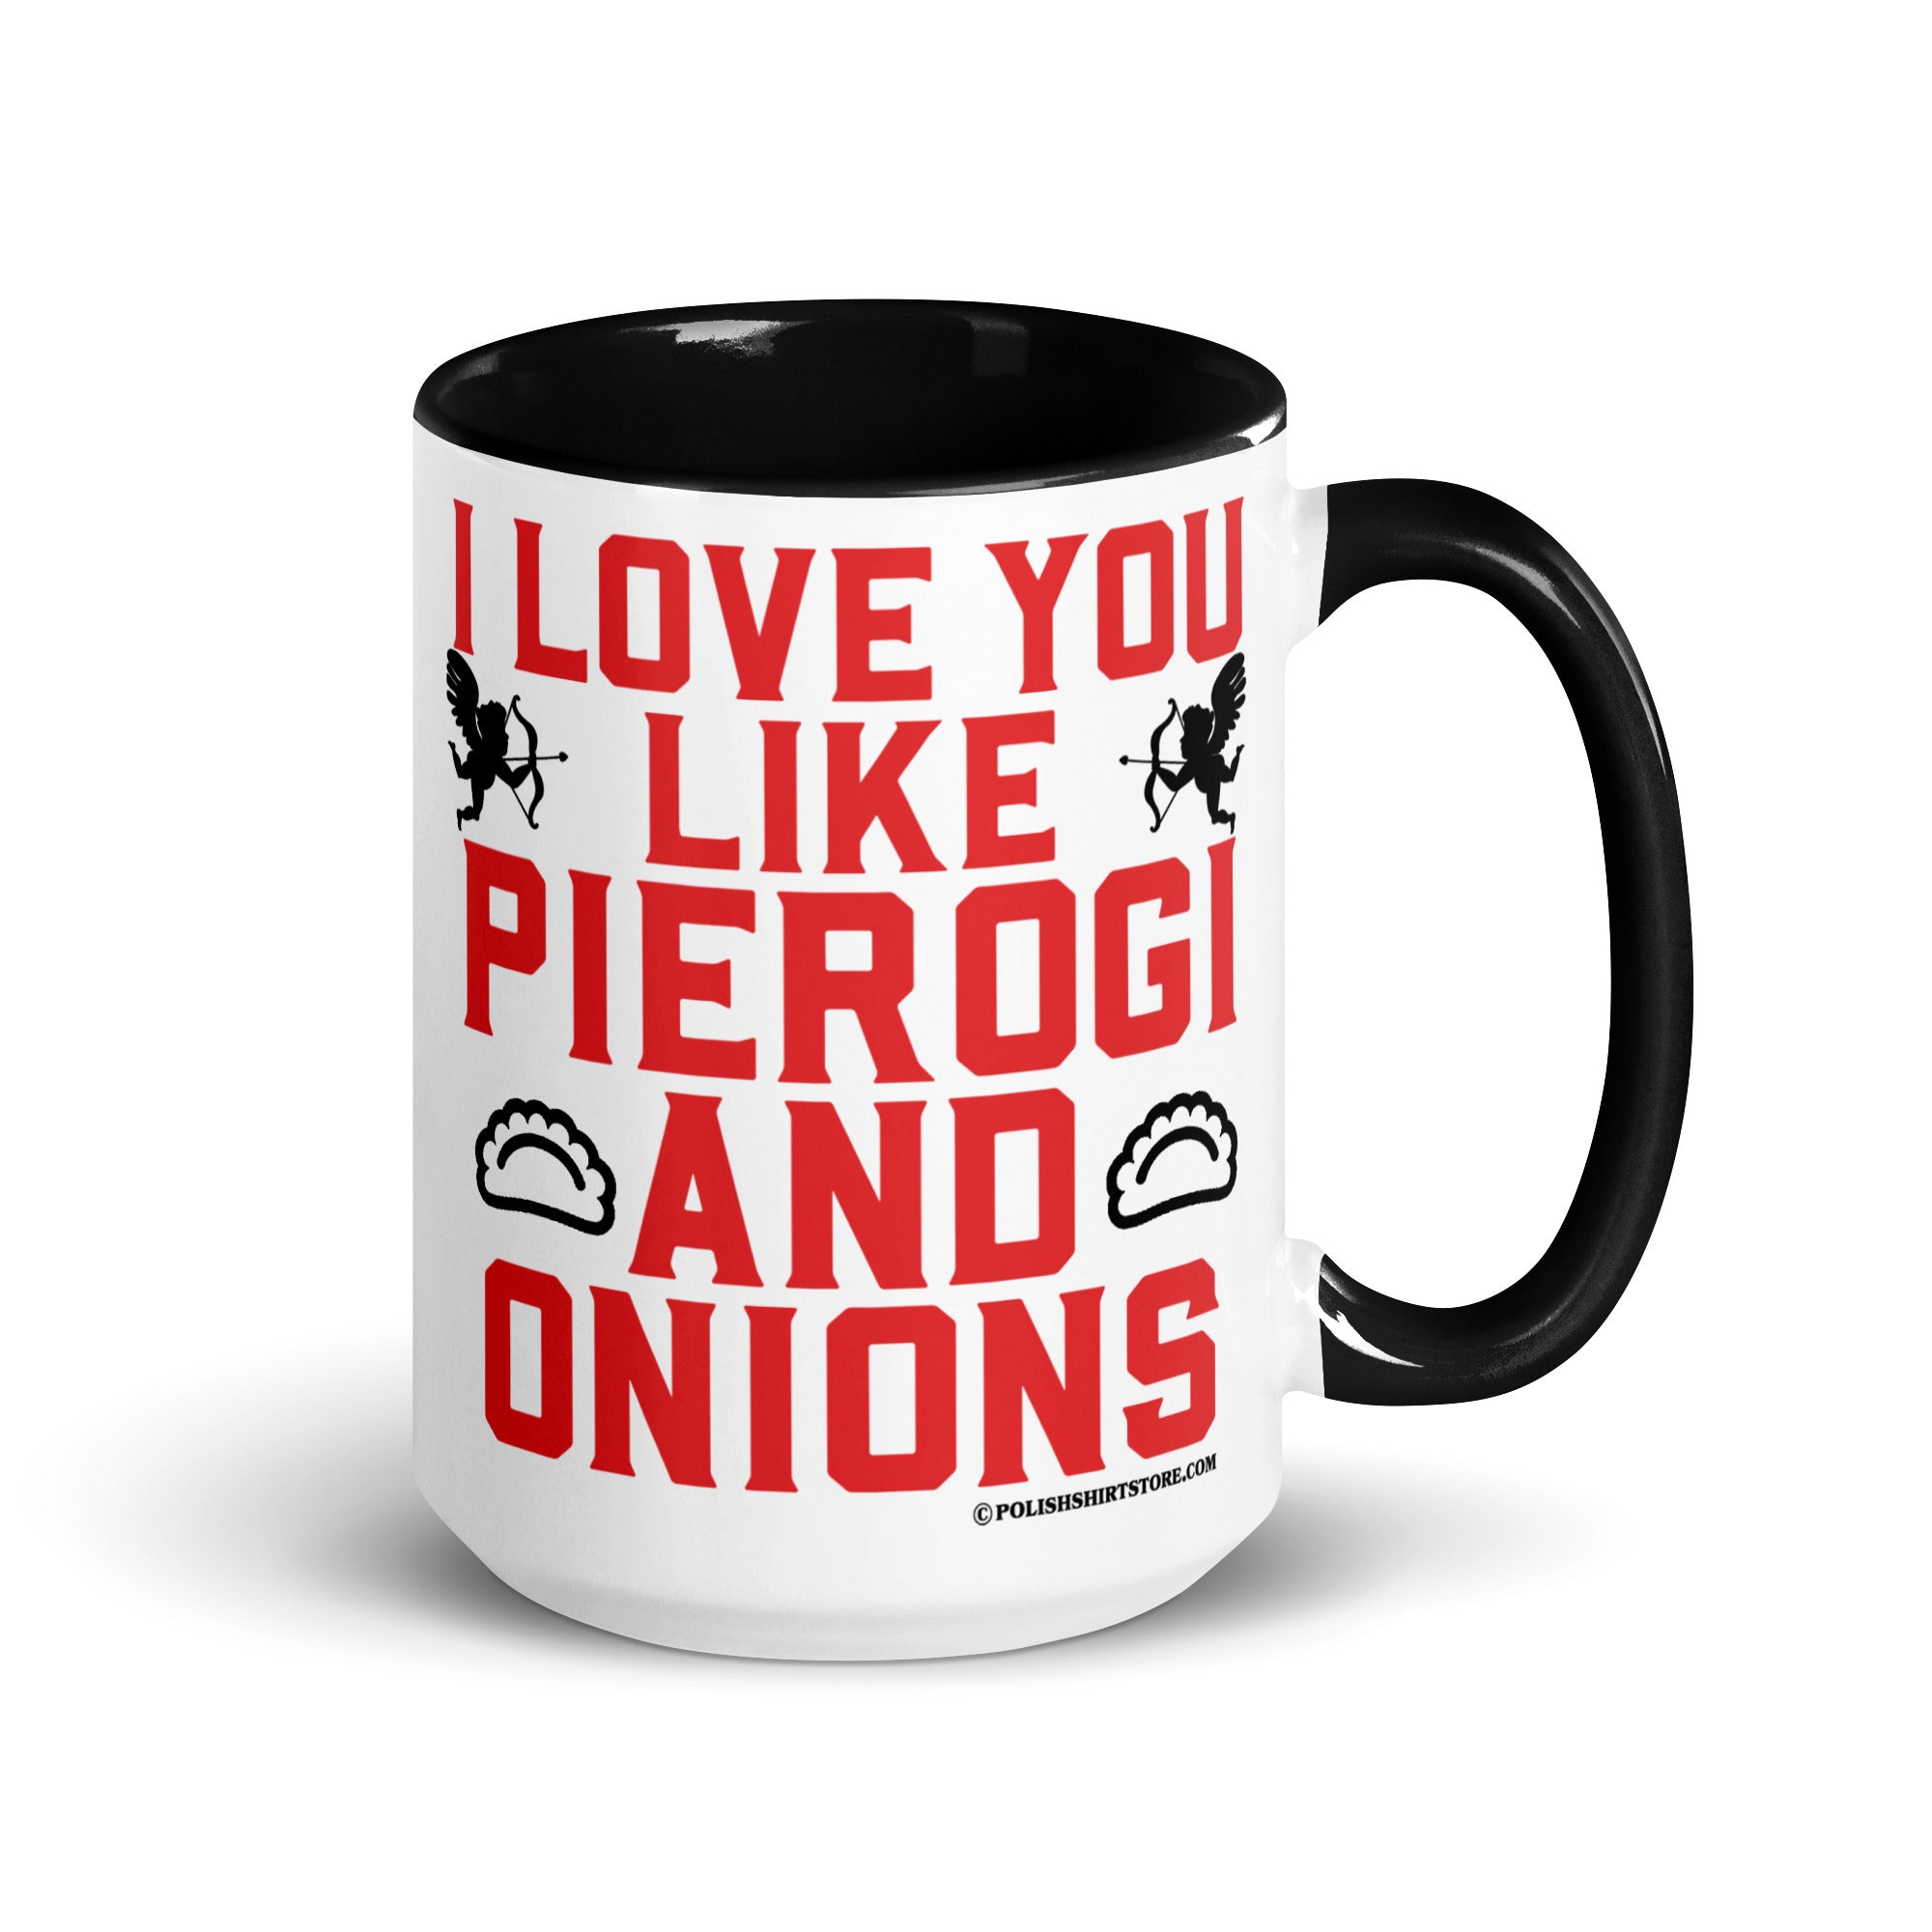 I Love You Like Pierogi And Onions Coffee Mug with Color Inside  Polish Shirt Store Black 15 oz 